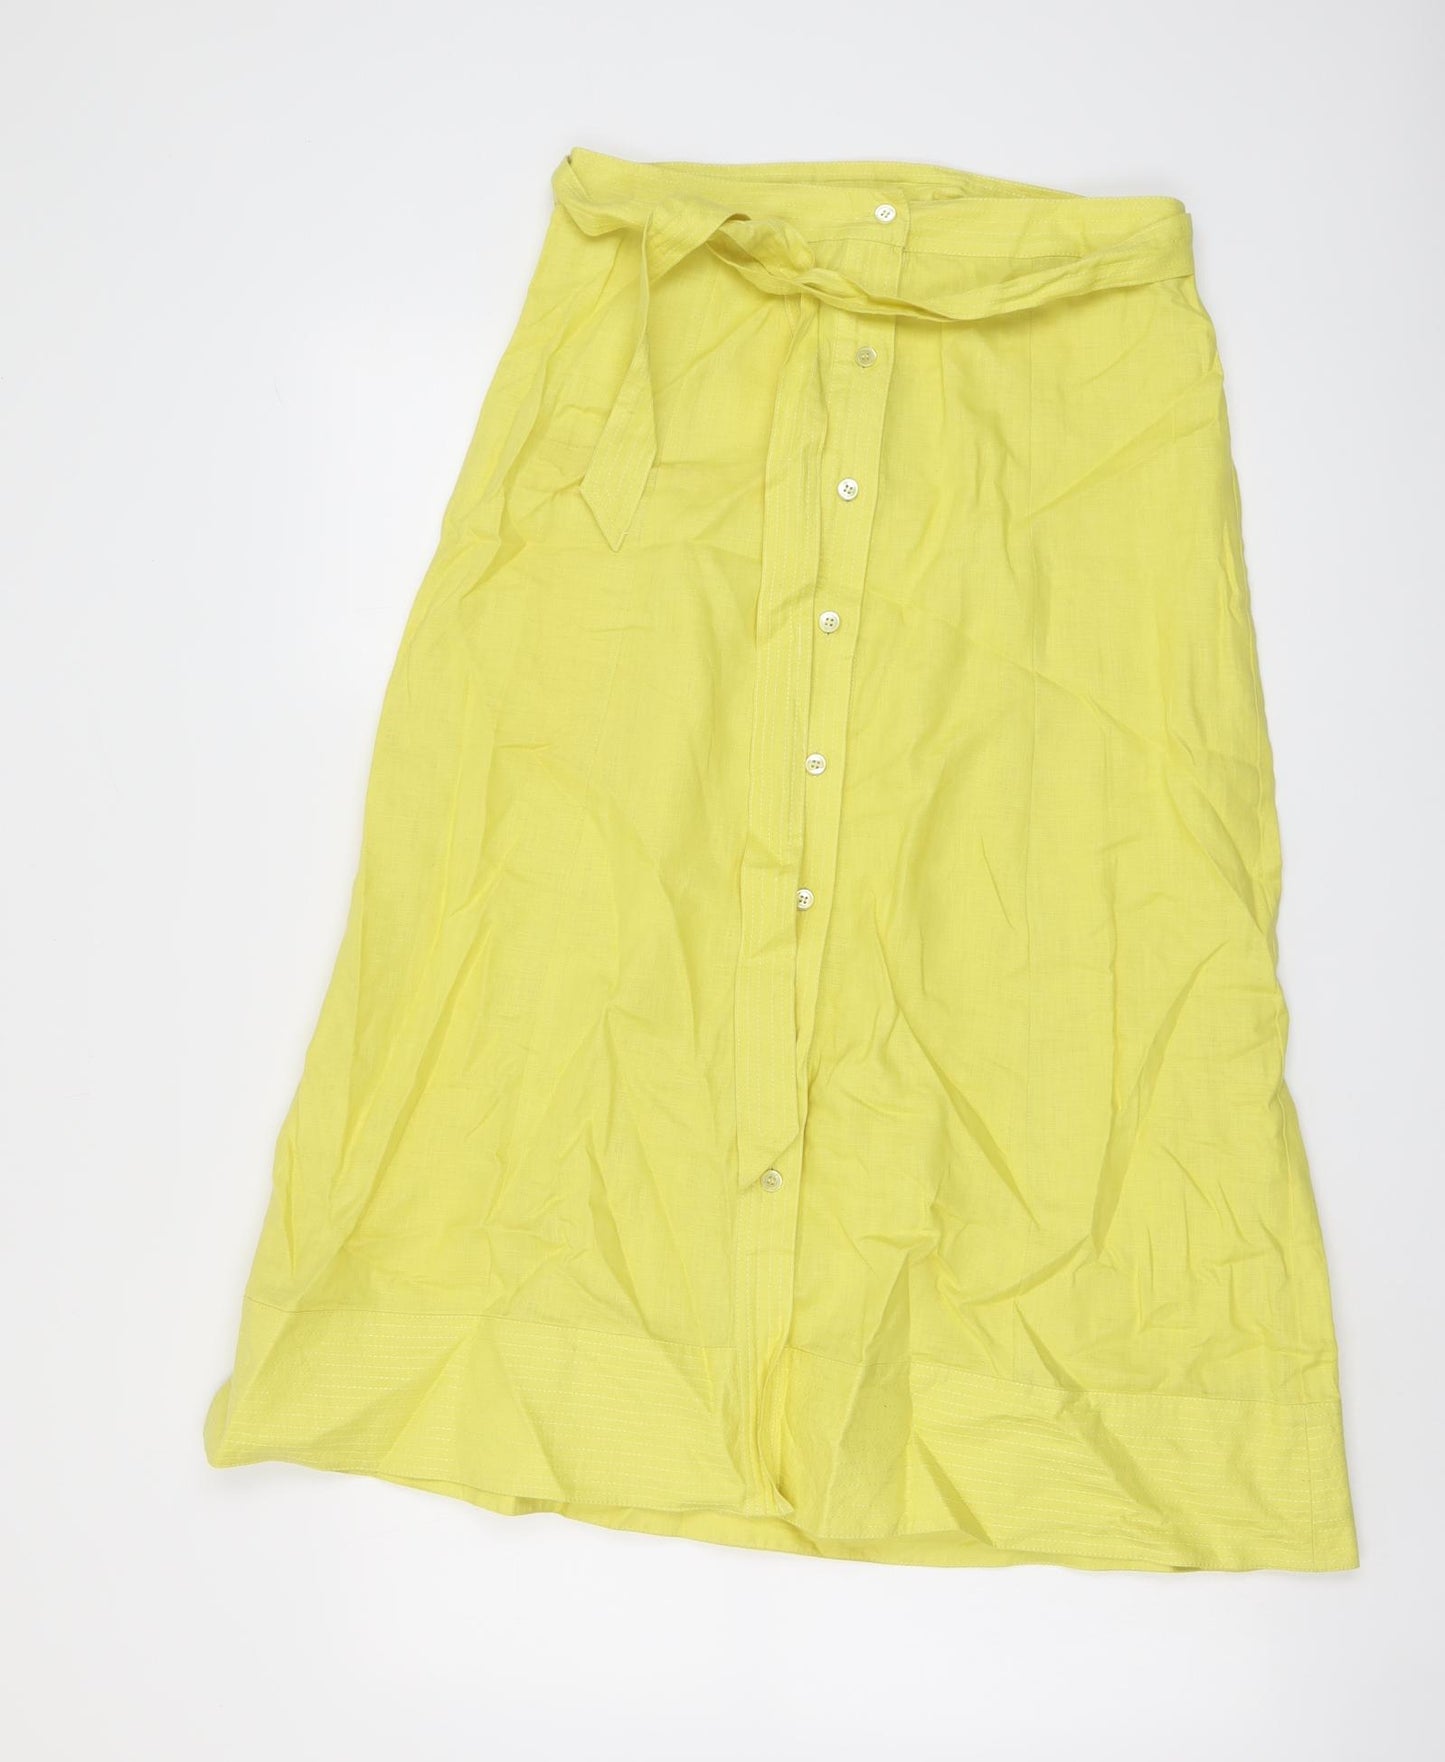 Laura Ashley Womens Yellow Linen A-Line Skirt Size 10 Button